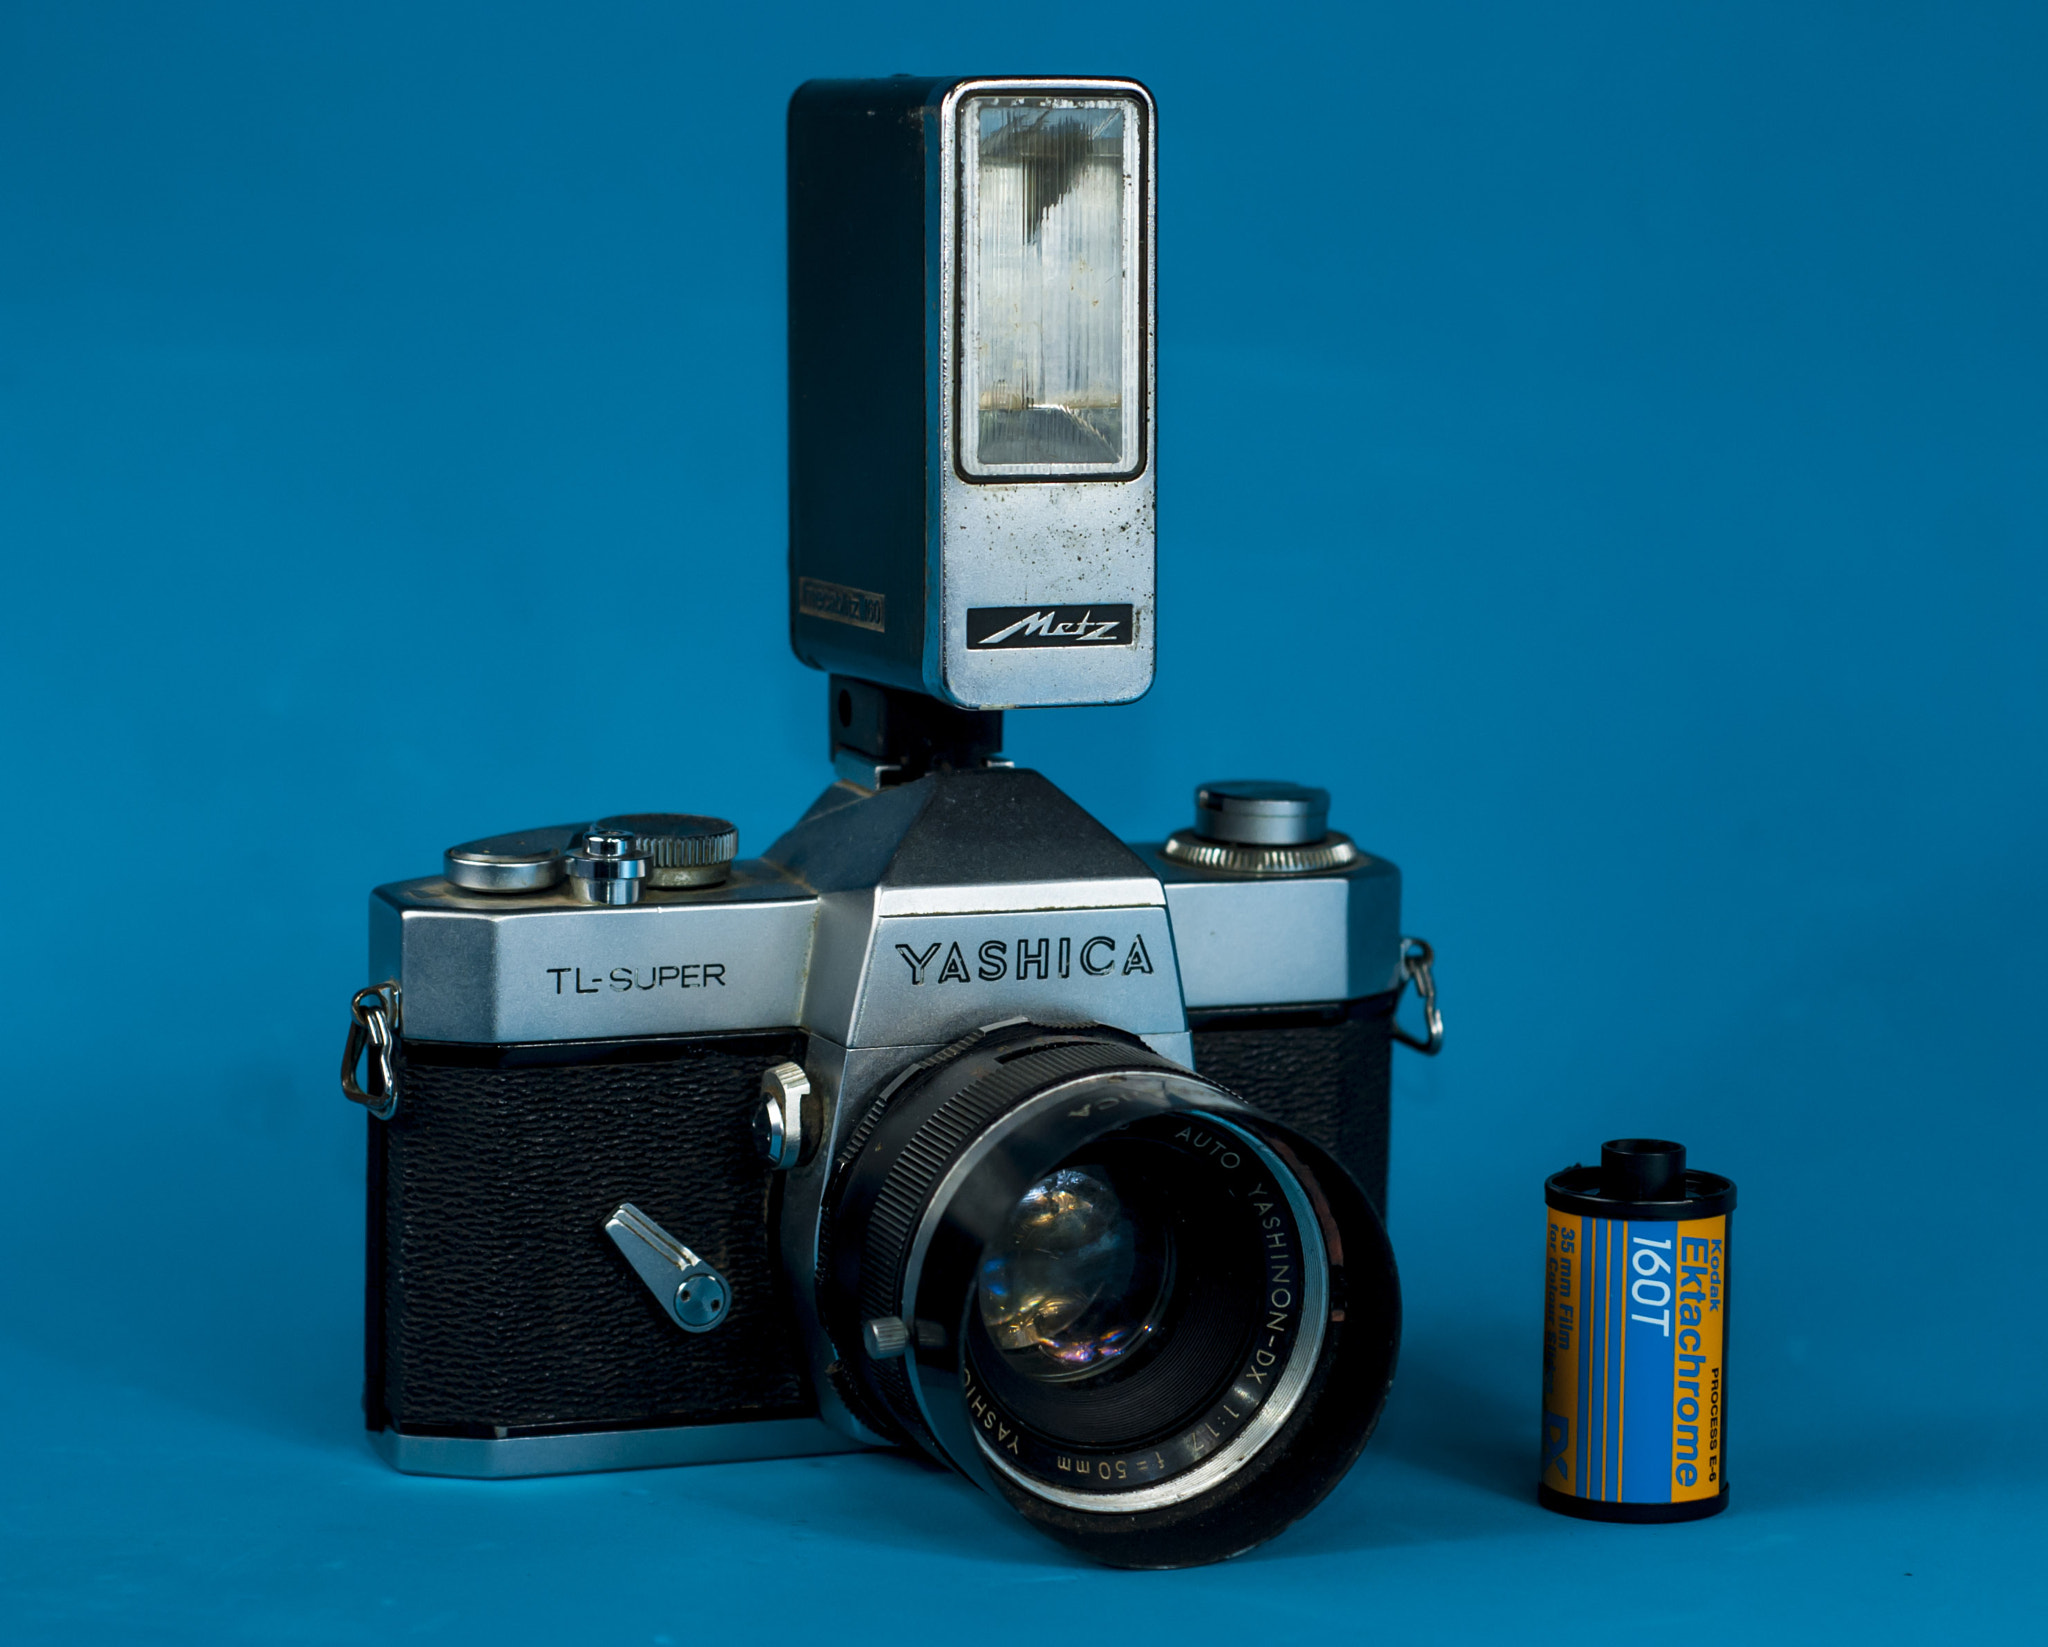 Nikon D80 + AF Nikkor 50mm f/1.8 N sample photo. Yashica photography